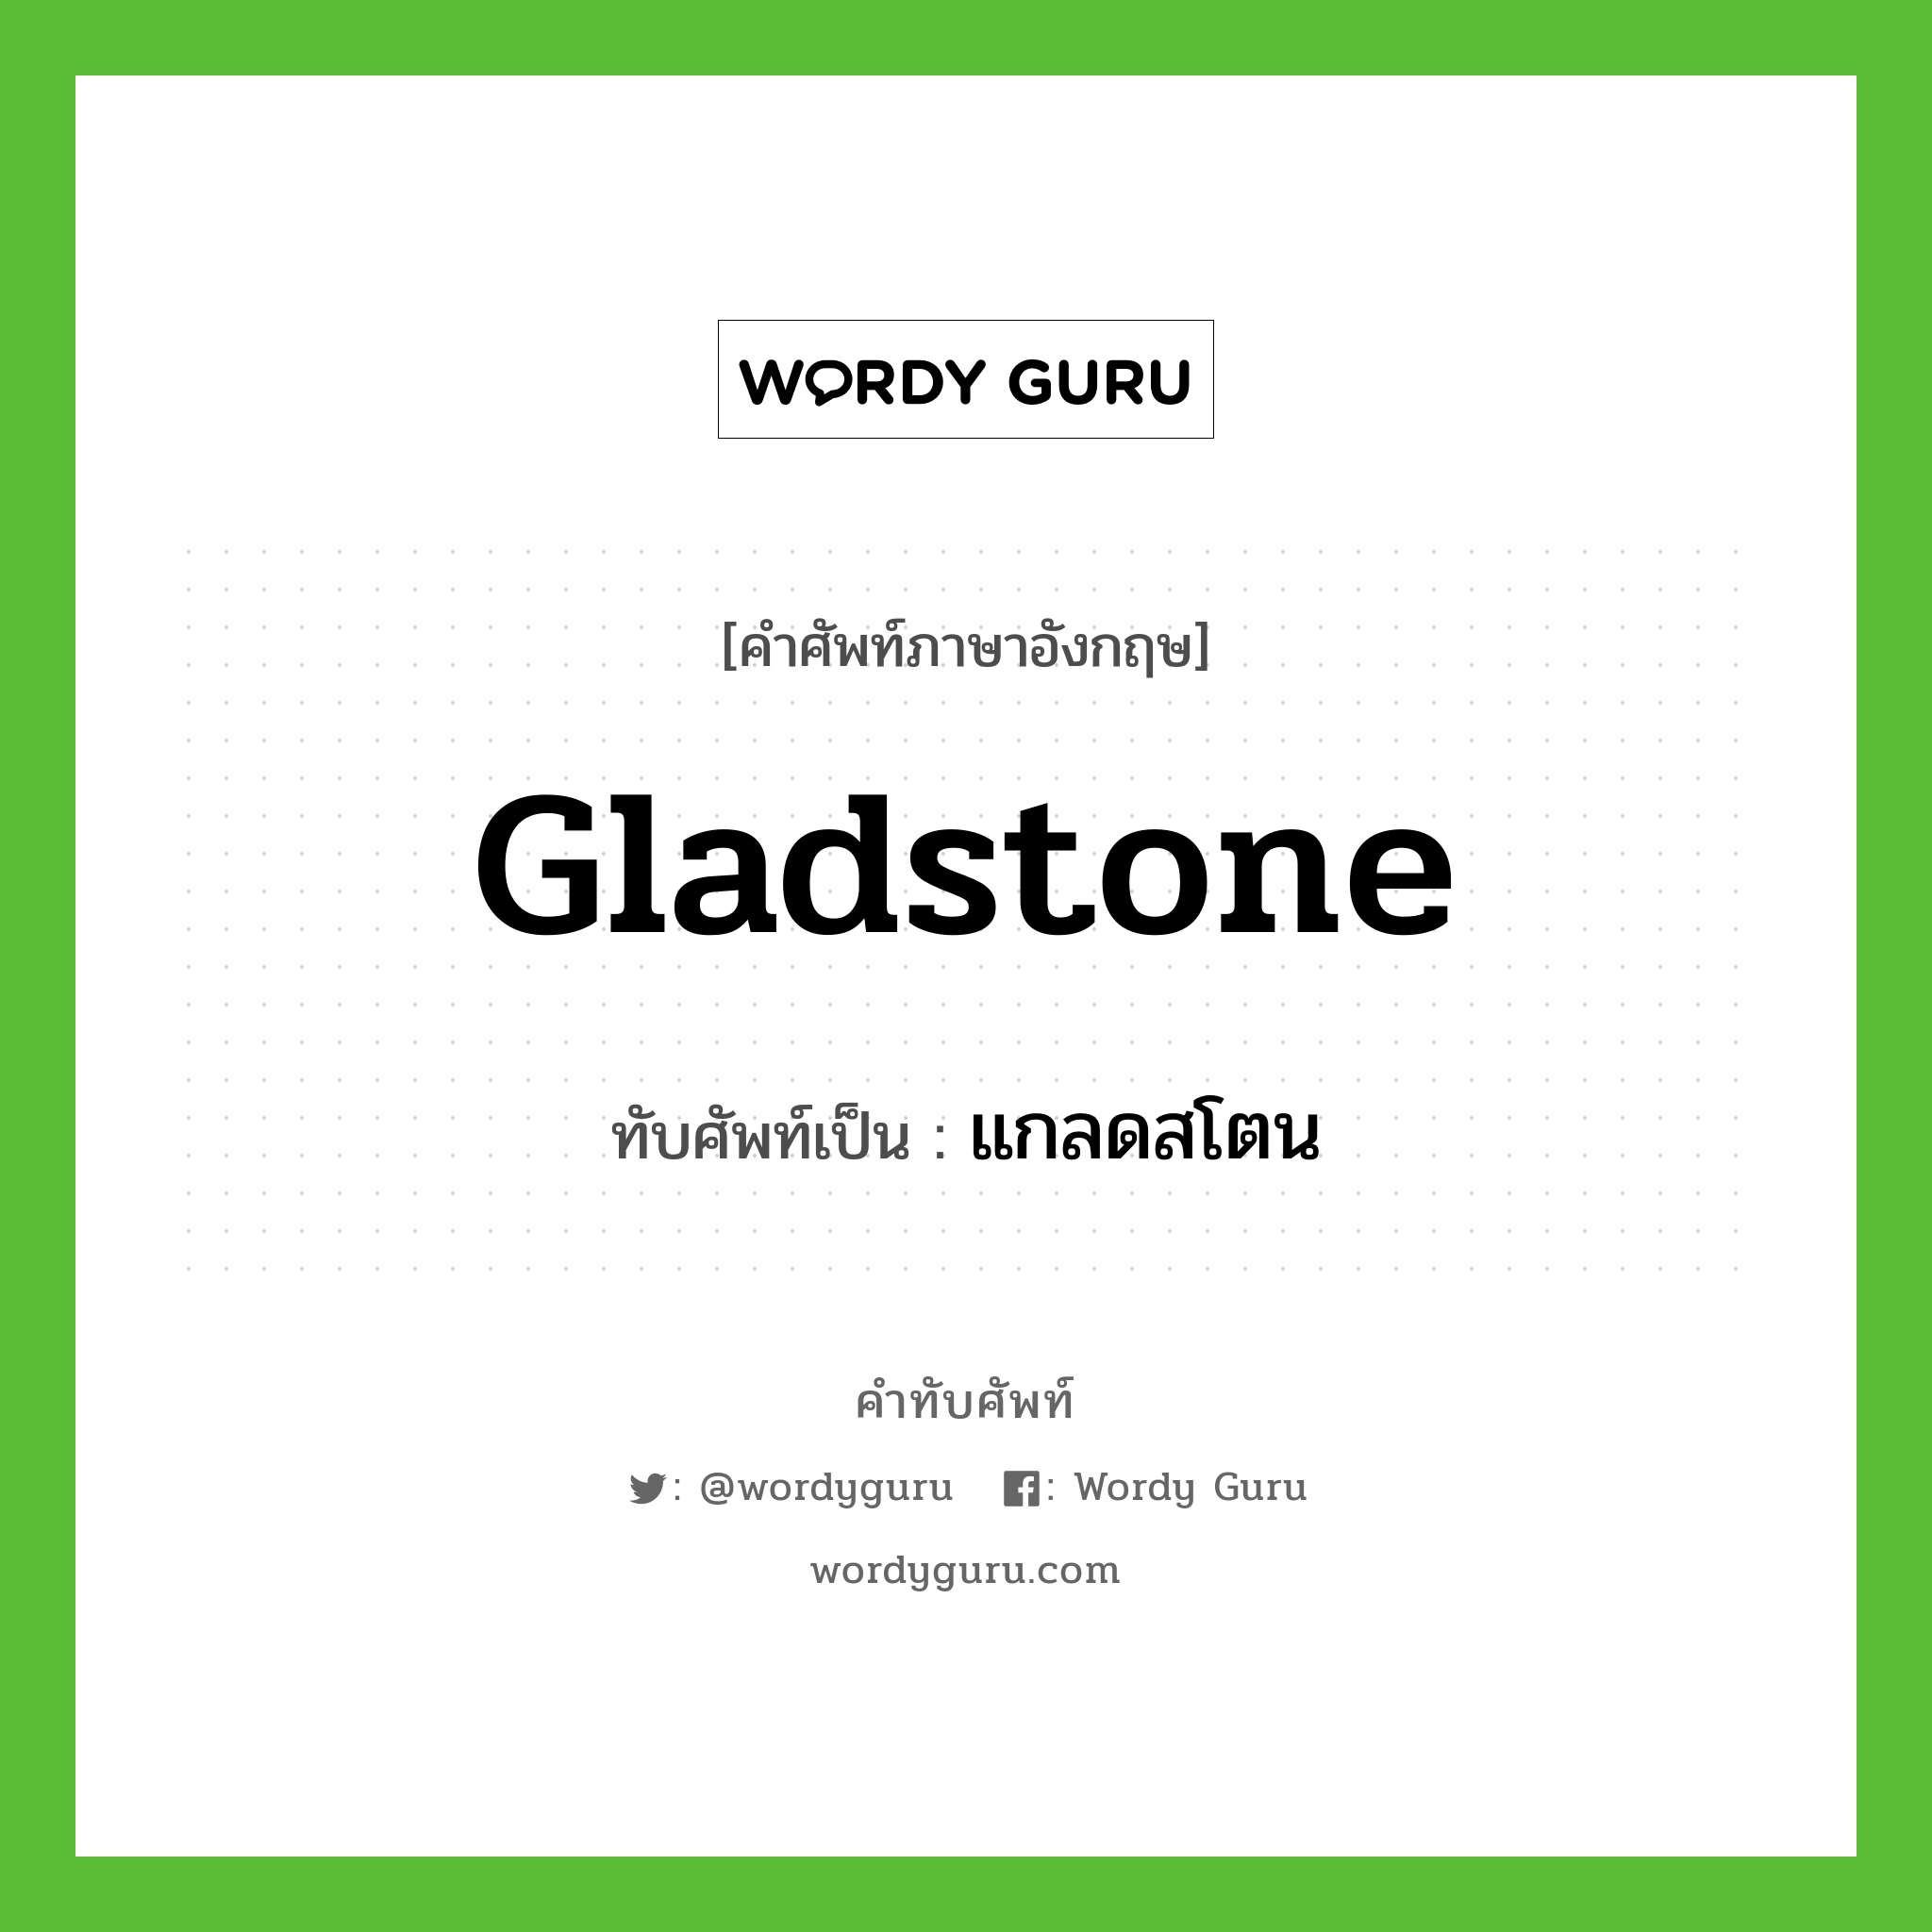 แกลดสโตน เขียนอย่างไร?, คำศัพท์ภาษาอังกฤษ แกลดสโตน ทับศัพท์เป็น Gladstone